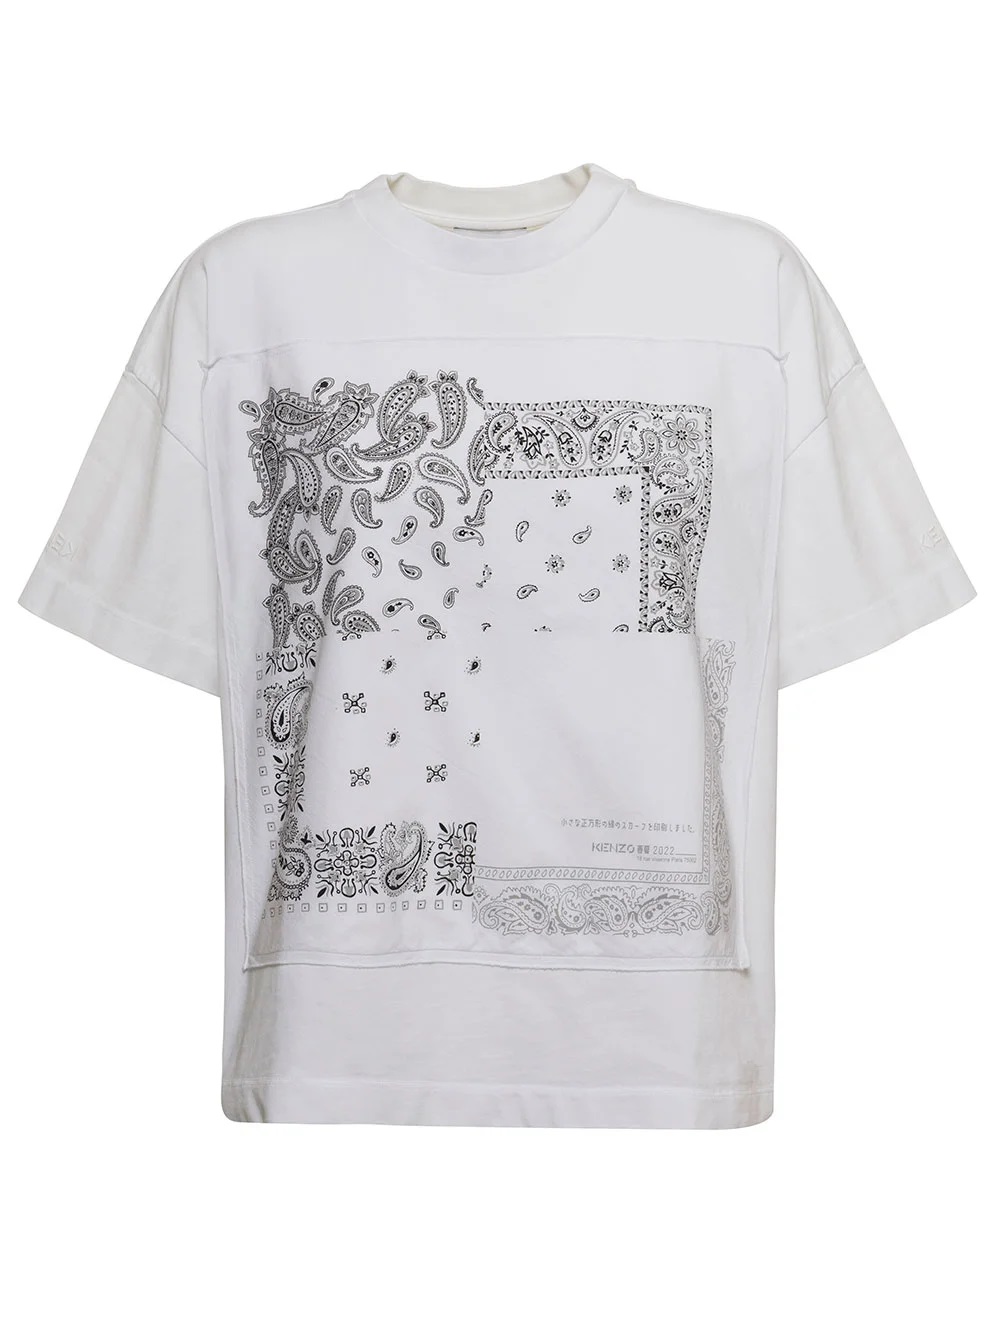 Kenzo Bandana print T-shirt, Women's Clothing